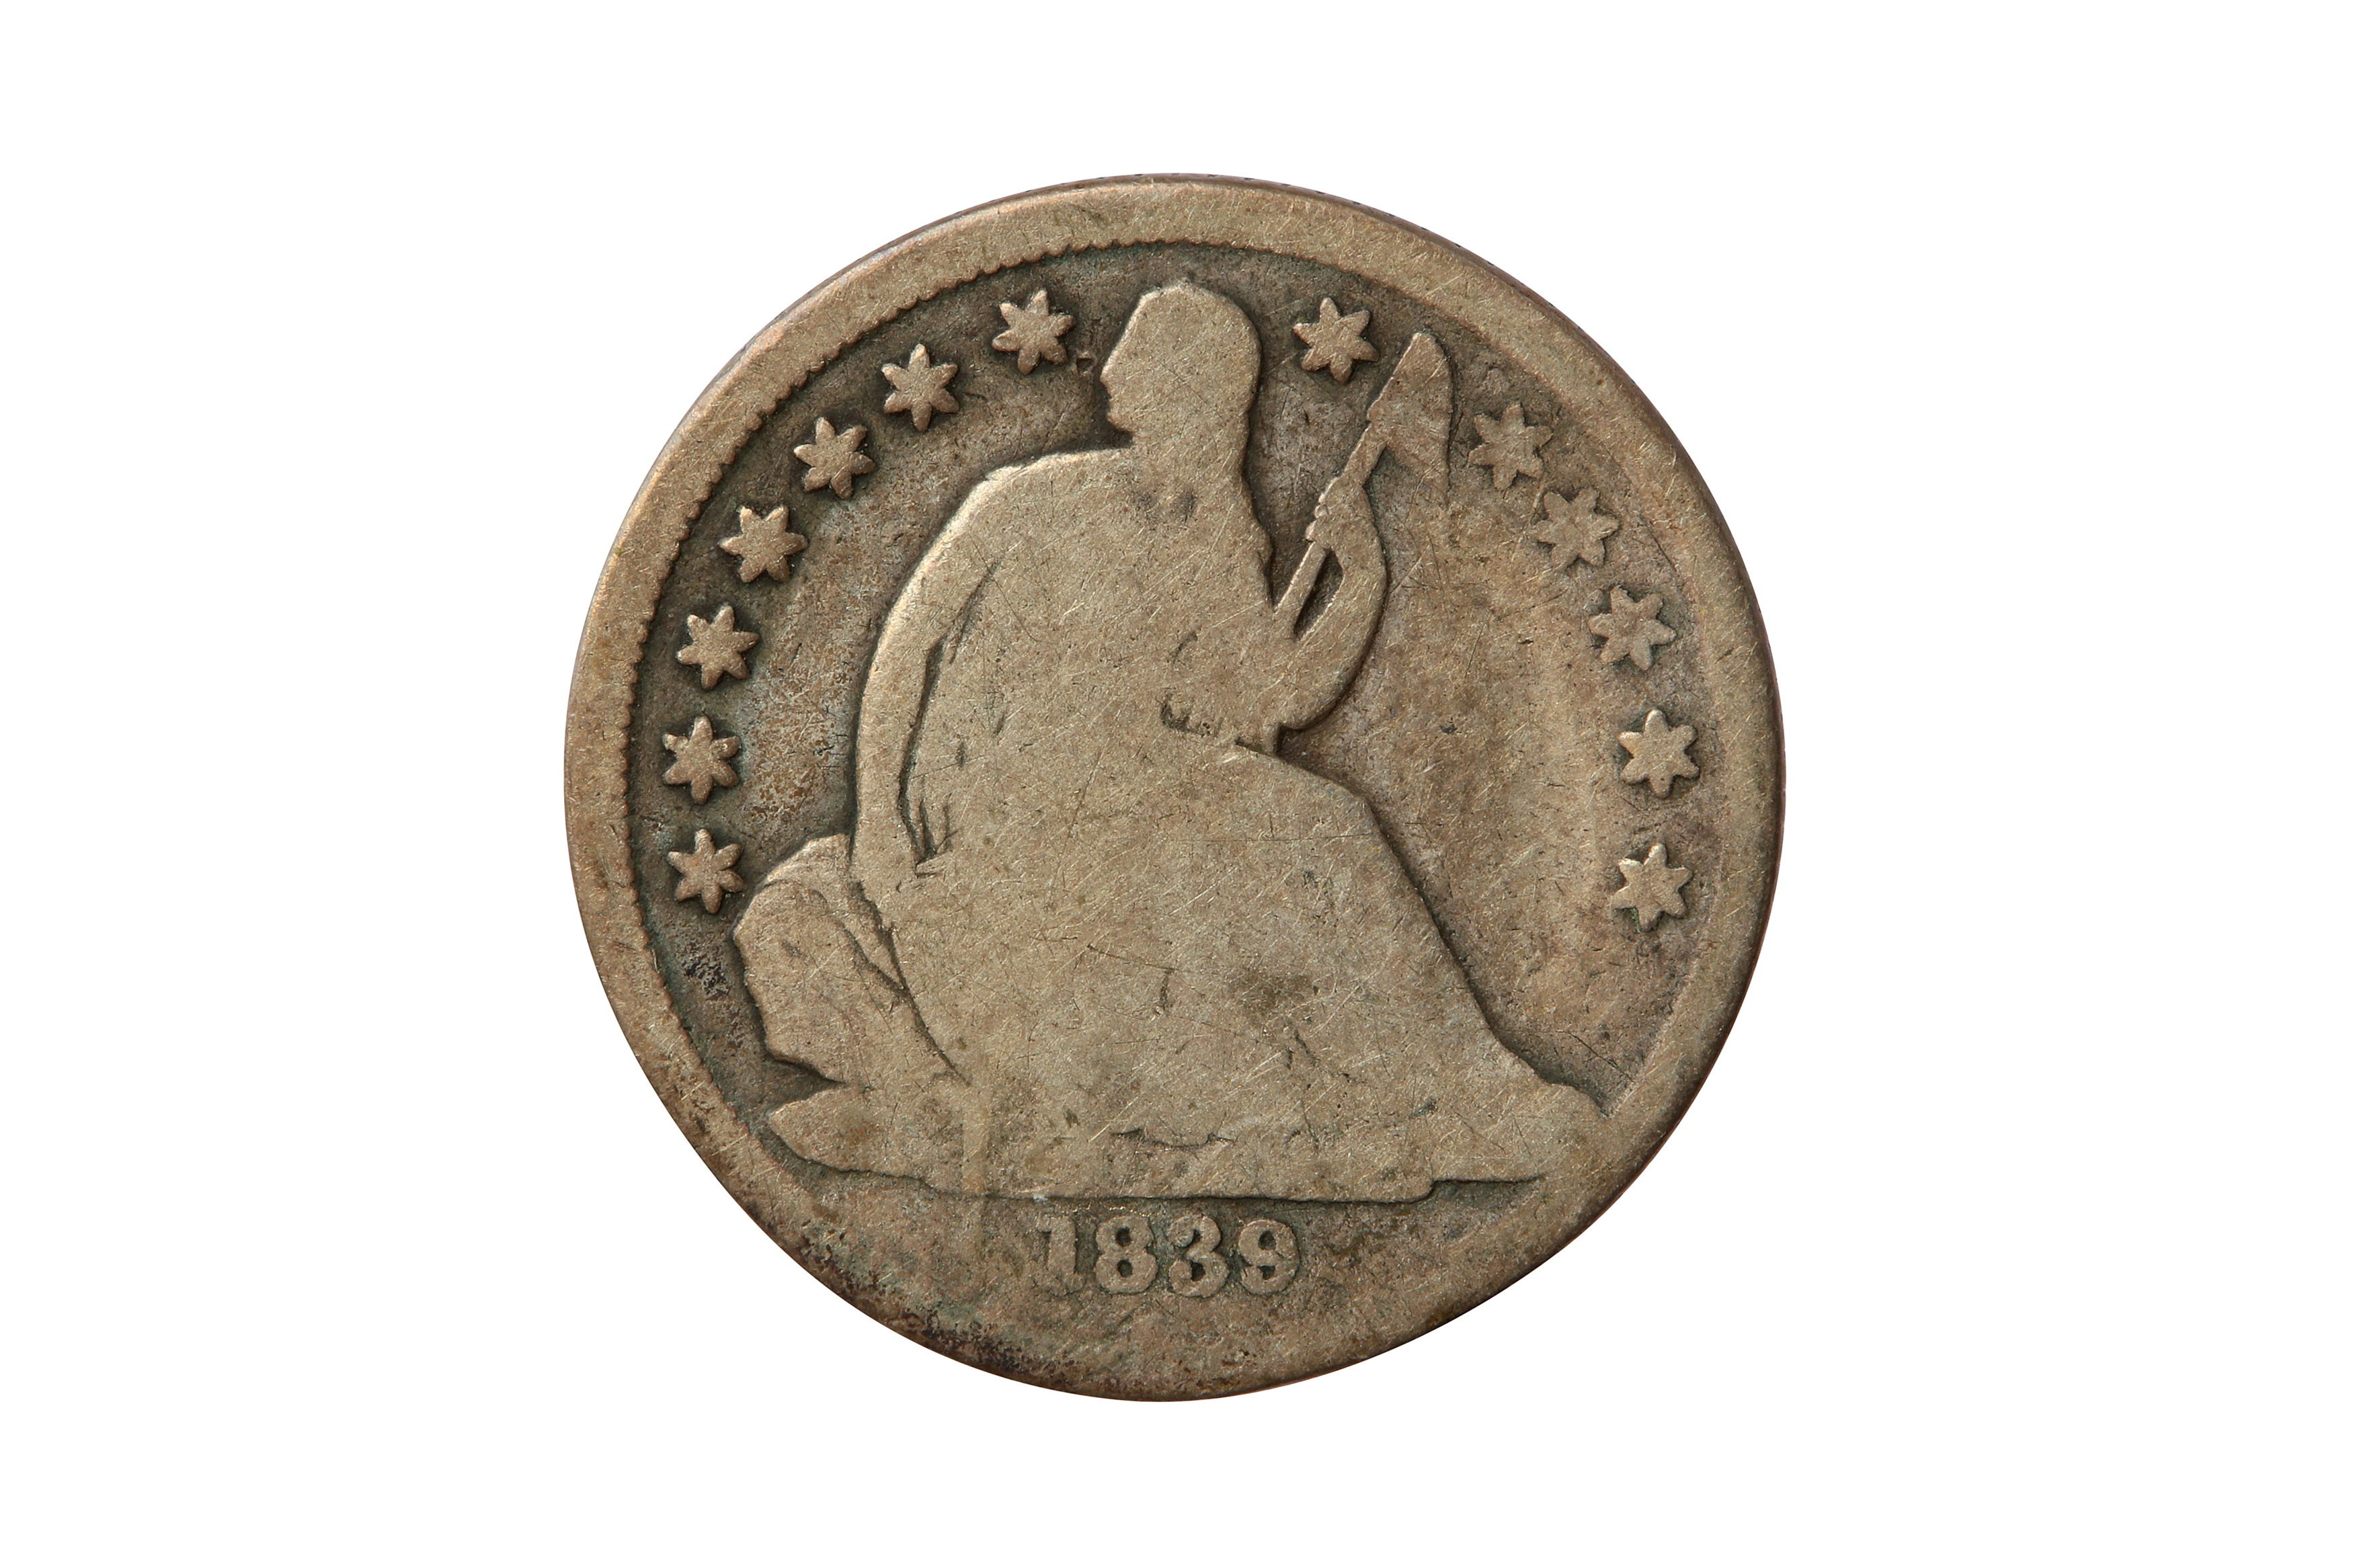 USA, 1839-O 10 CENTS/DIME.